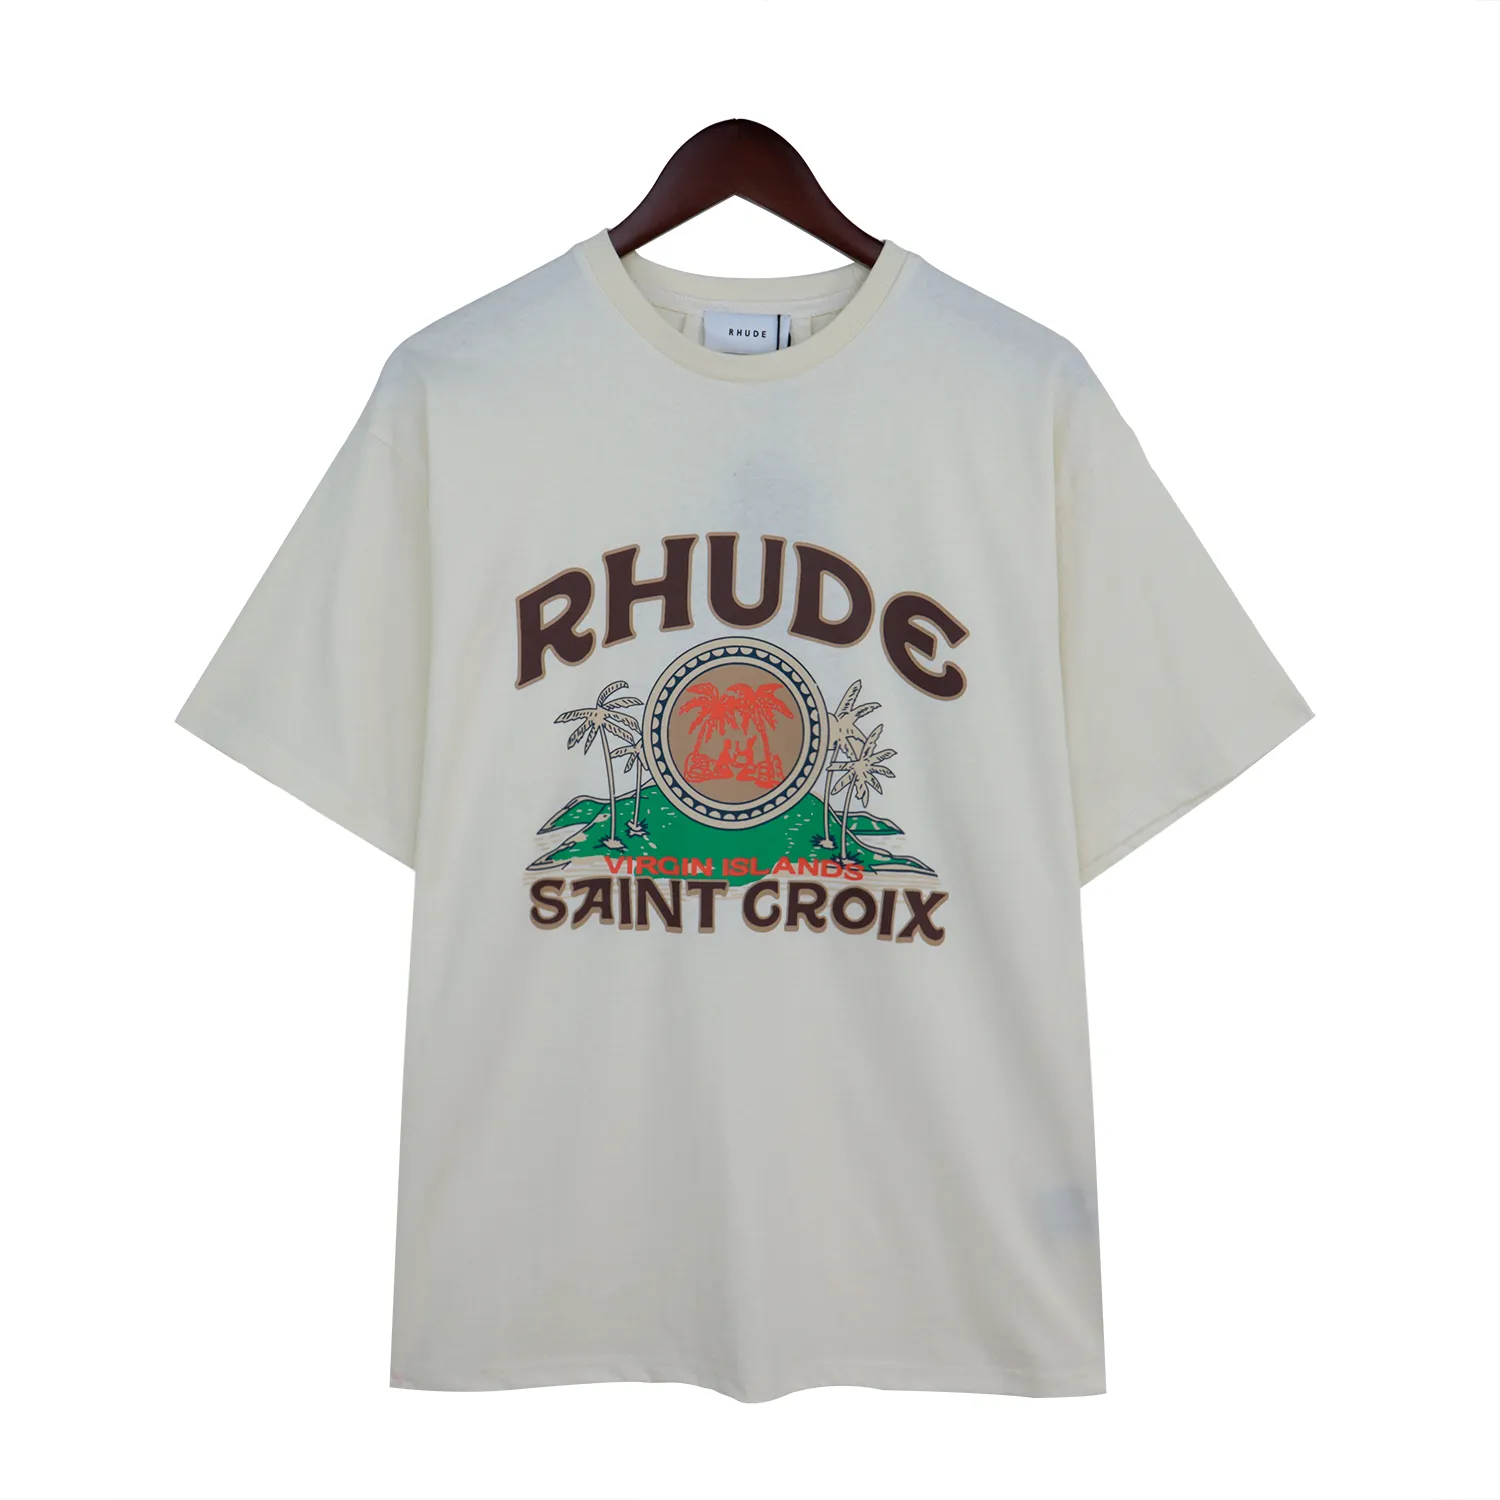 Rhudes 티셔츠 남성 디자이너 티셔츠 티 셔츠 티 운동 셔츠 대형 100%면화 rhudes tshirts 빈티지 짧은 슬리브 미국 크기 RH88754